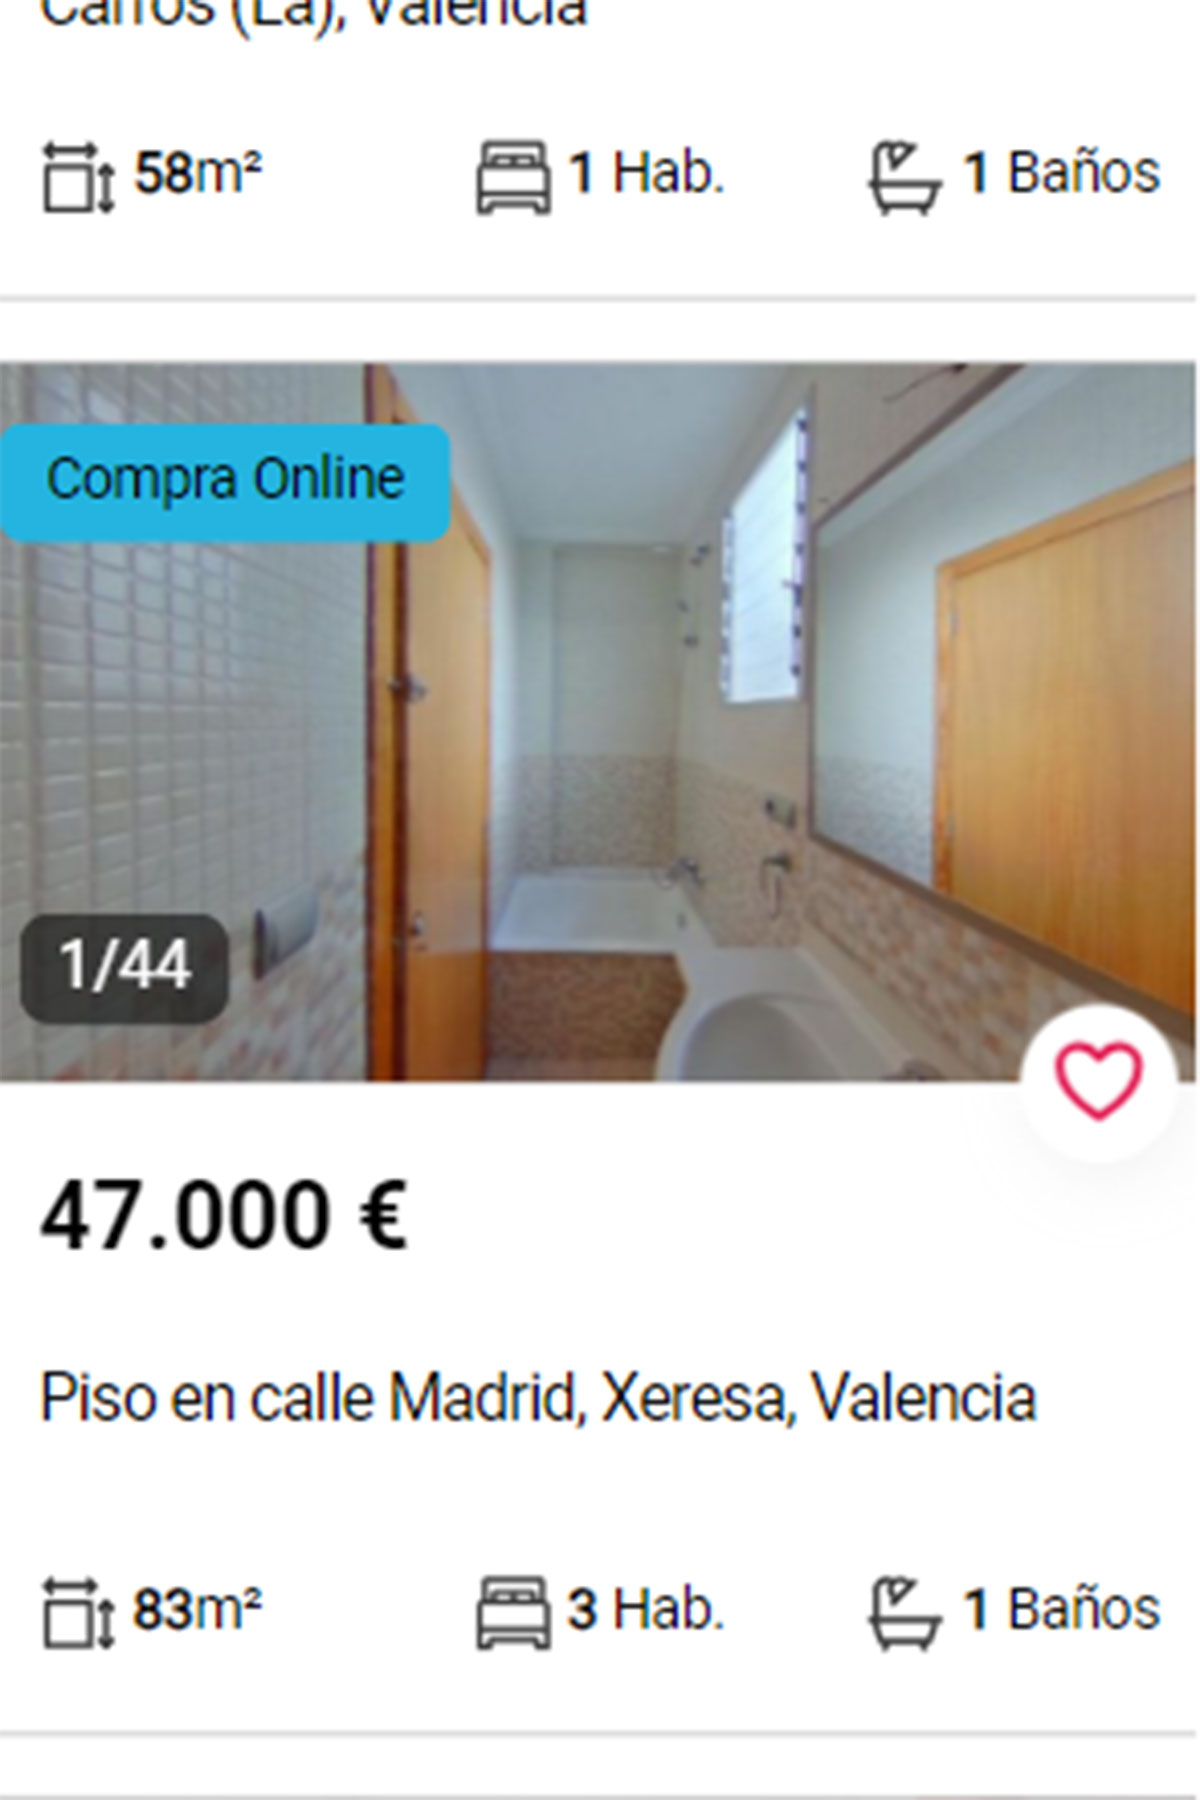 Piso en Valencia por 47.000 euros